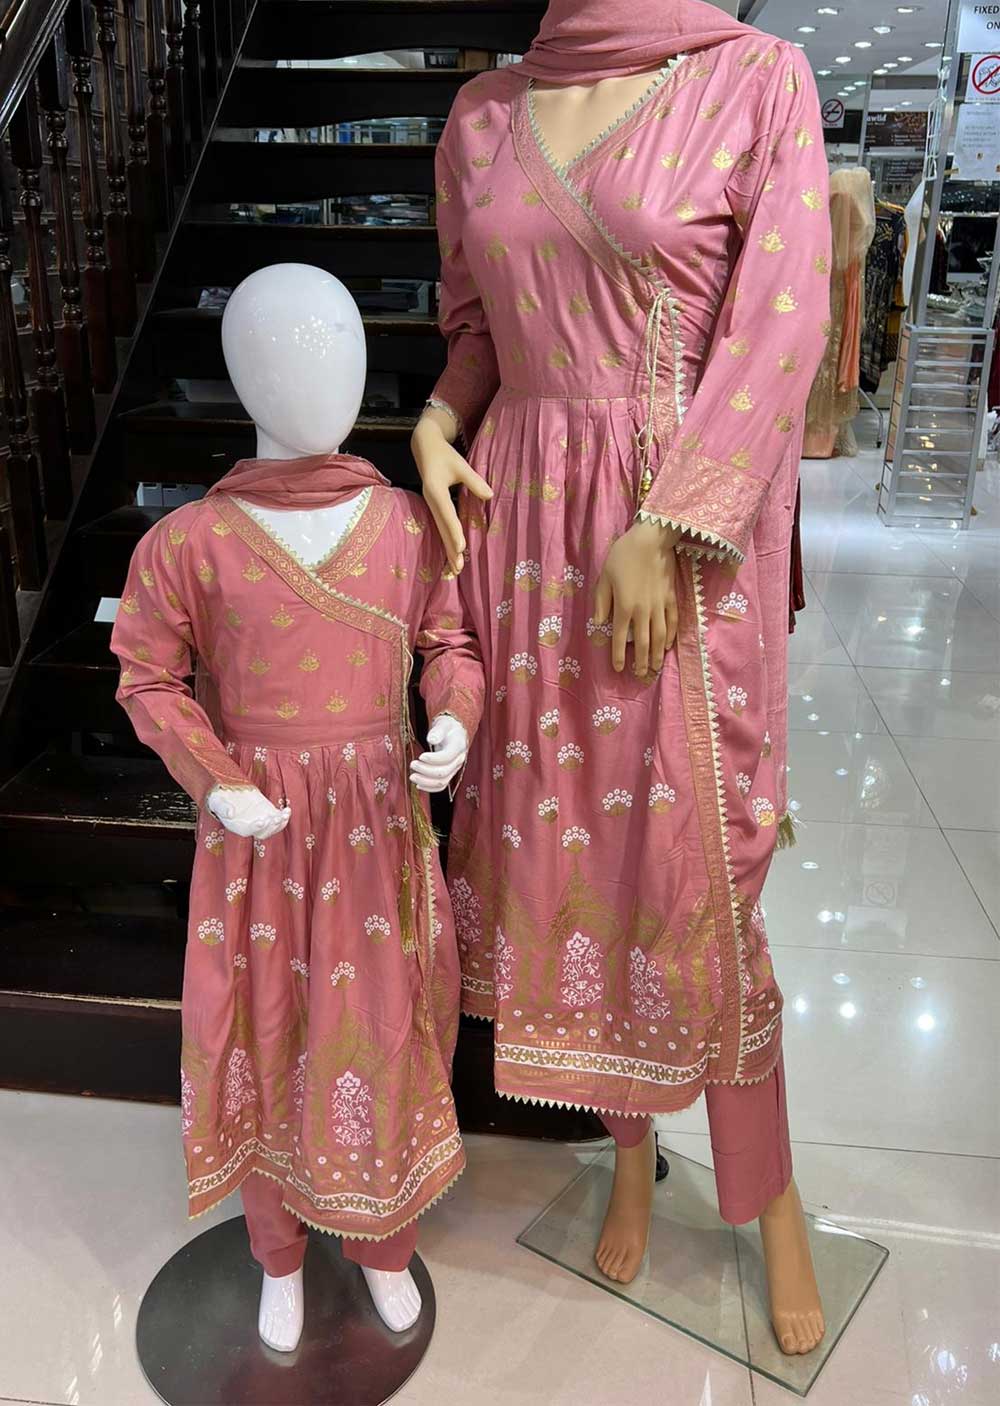 HK76 Xaolin Readymade Pink Linen Mother & Daughter Dress - Memsaab Online